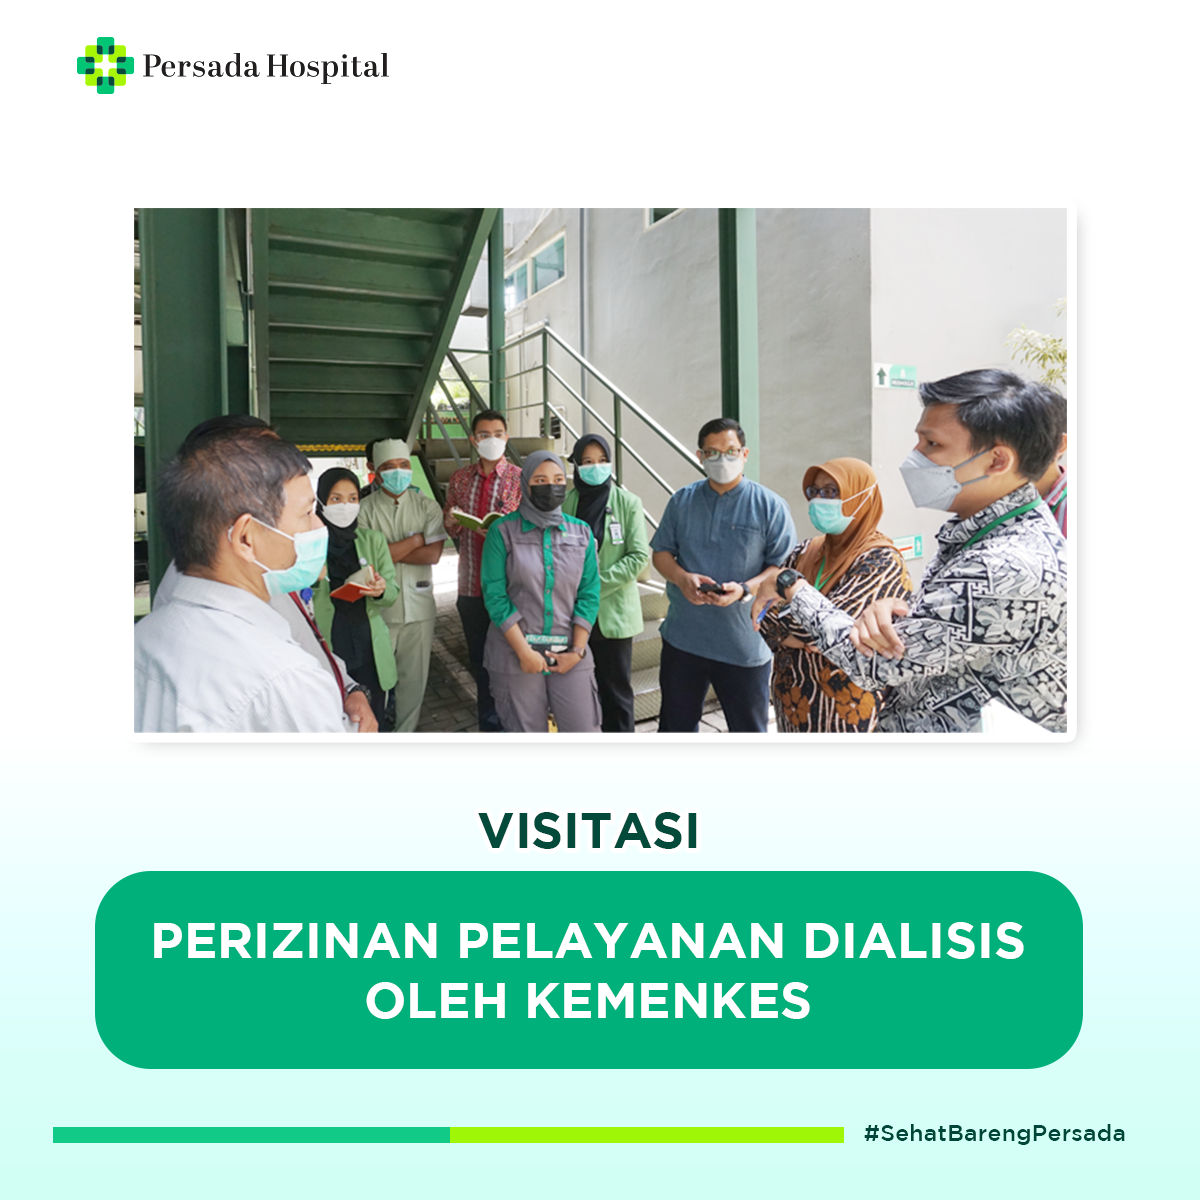 visitasi-perizinan-pelayanan-dialisis-persada-hospital